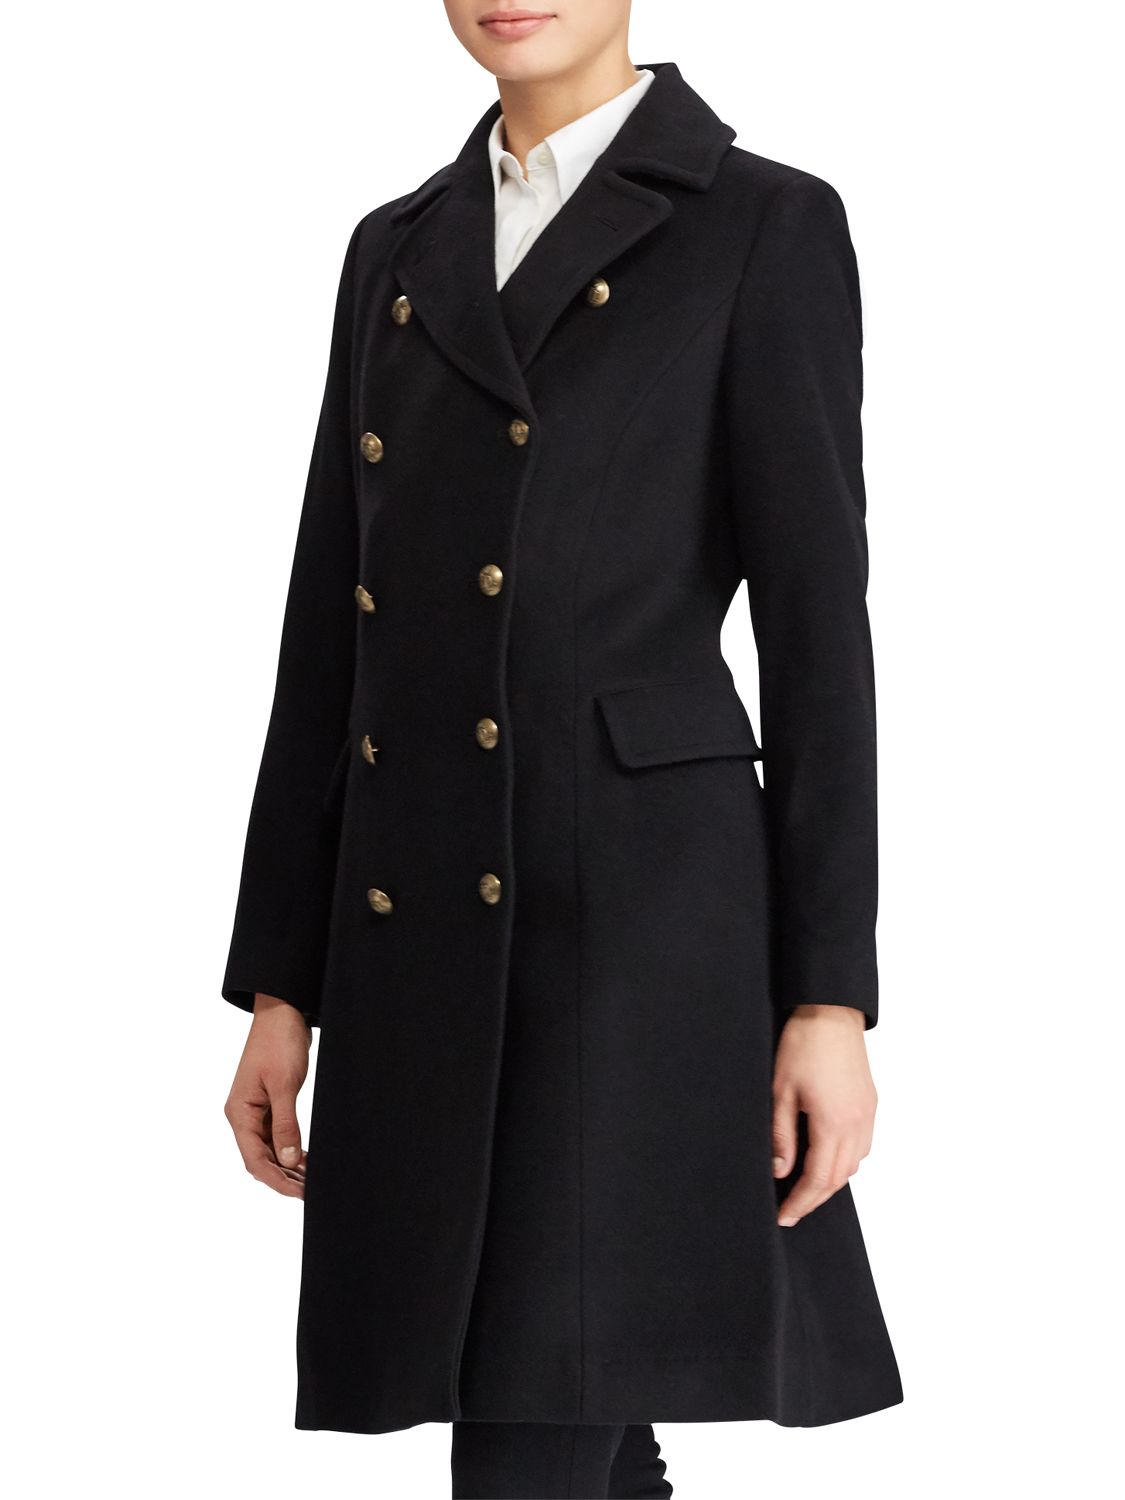 Lauren Ralph Lauren Wool Blend Military Coat, Black